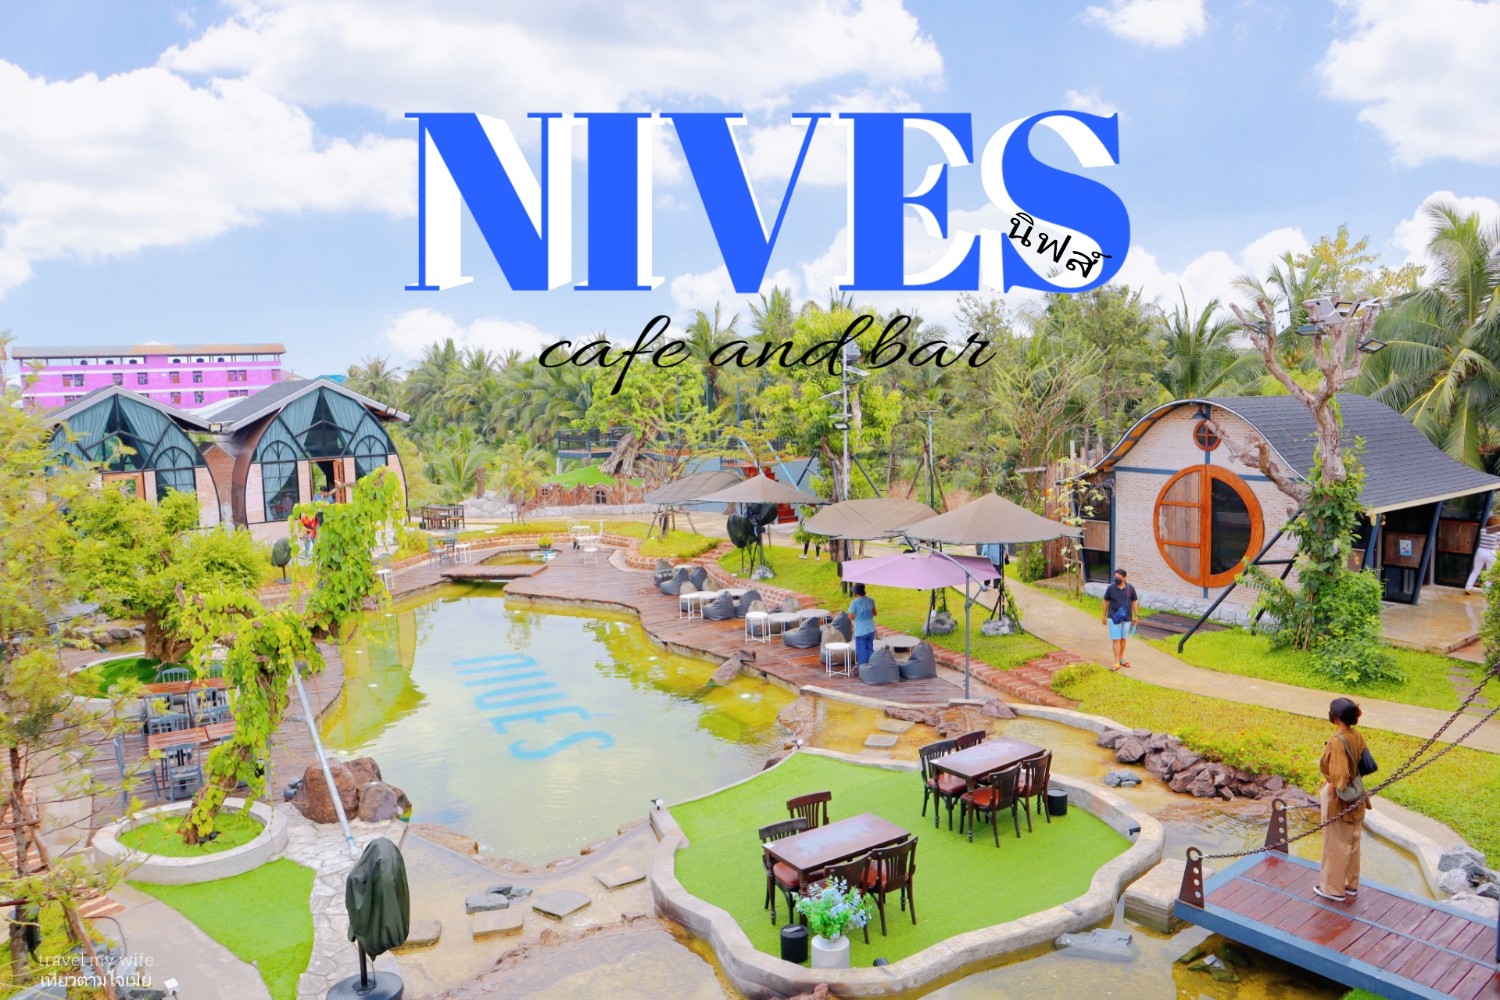 [SR] Nives Cafe and Bar pantip